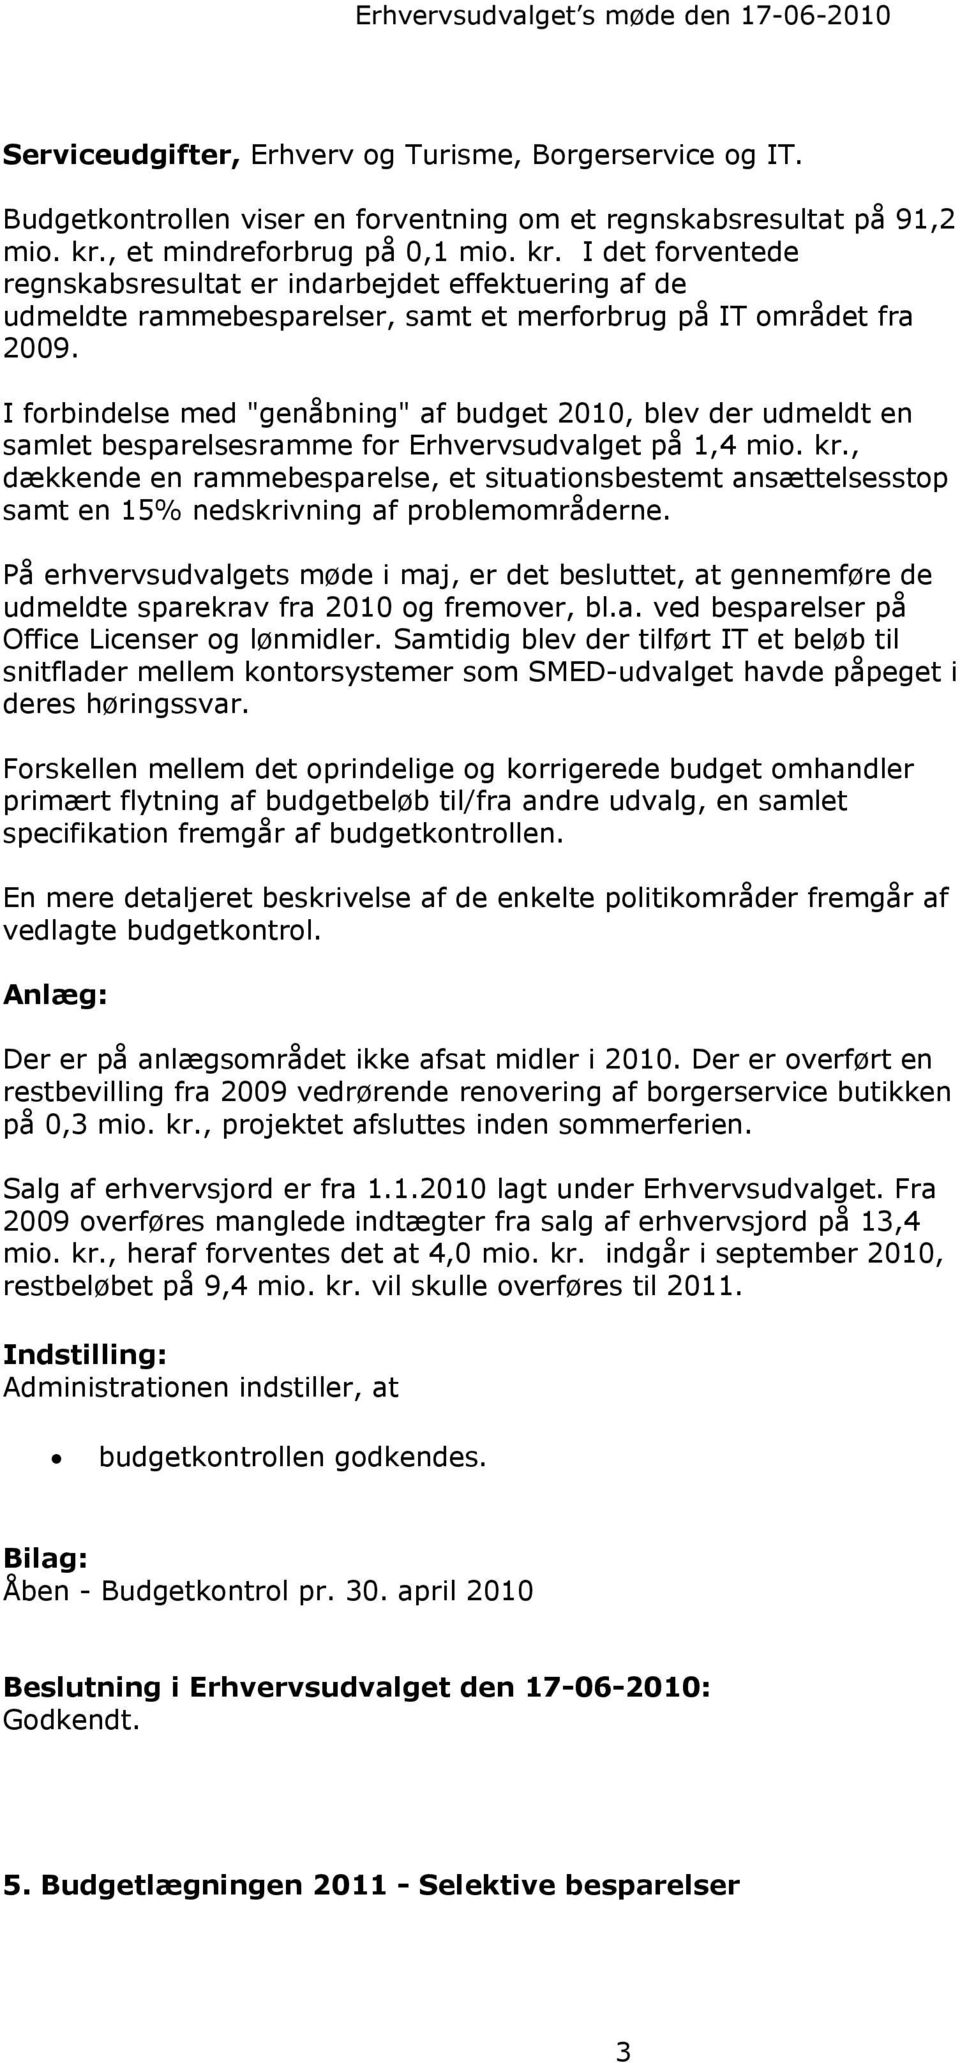 I forbindelse med "genåbning" af budget 2010, blev der udmeldt en samlet besparelsesramme for Erhvervsudvalget på 1,4 mio. kr.